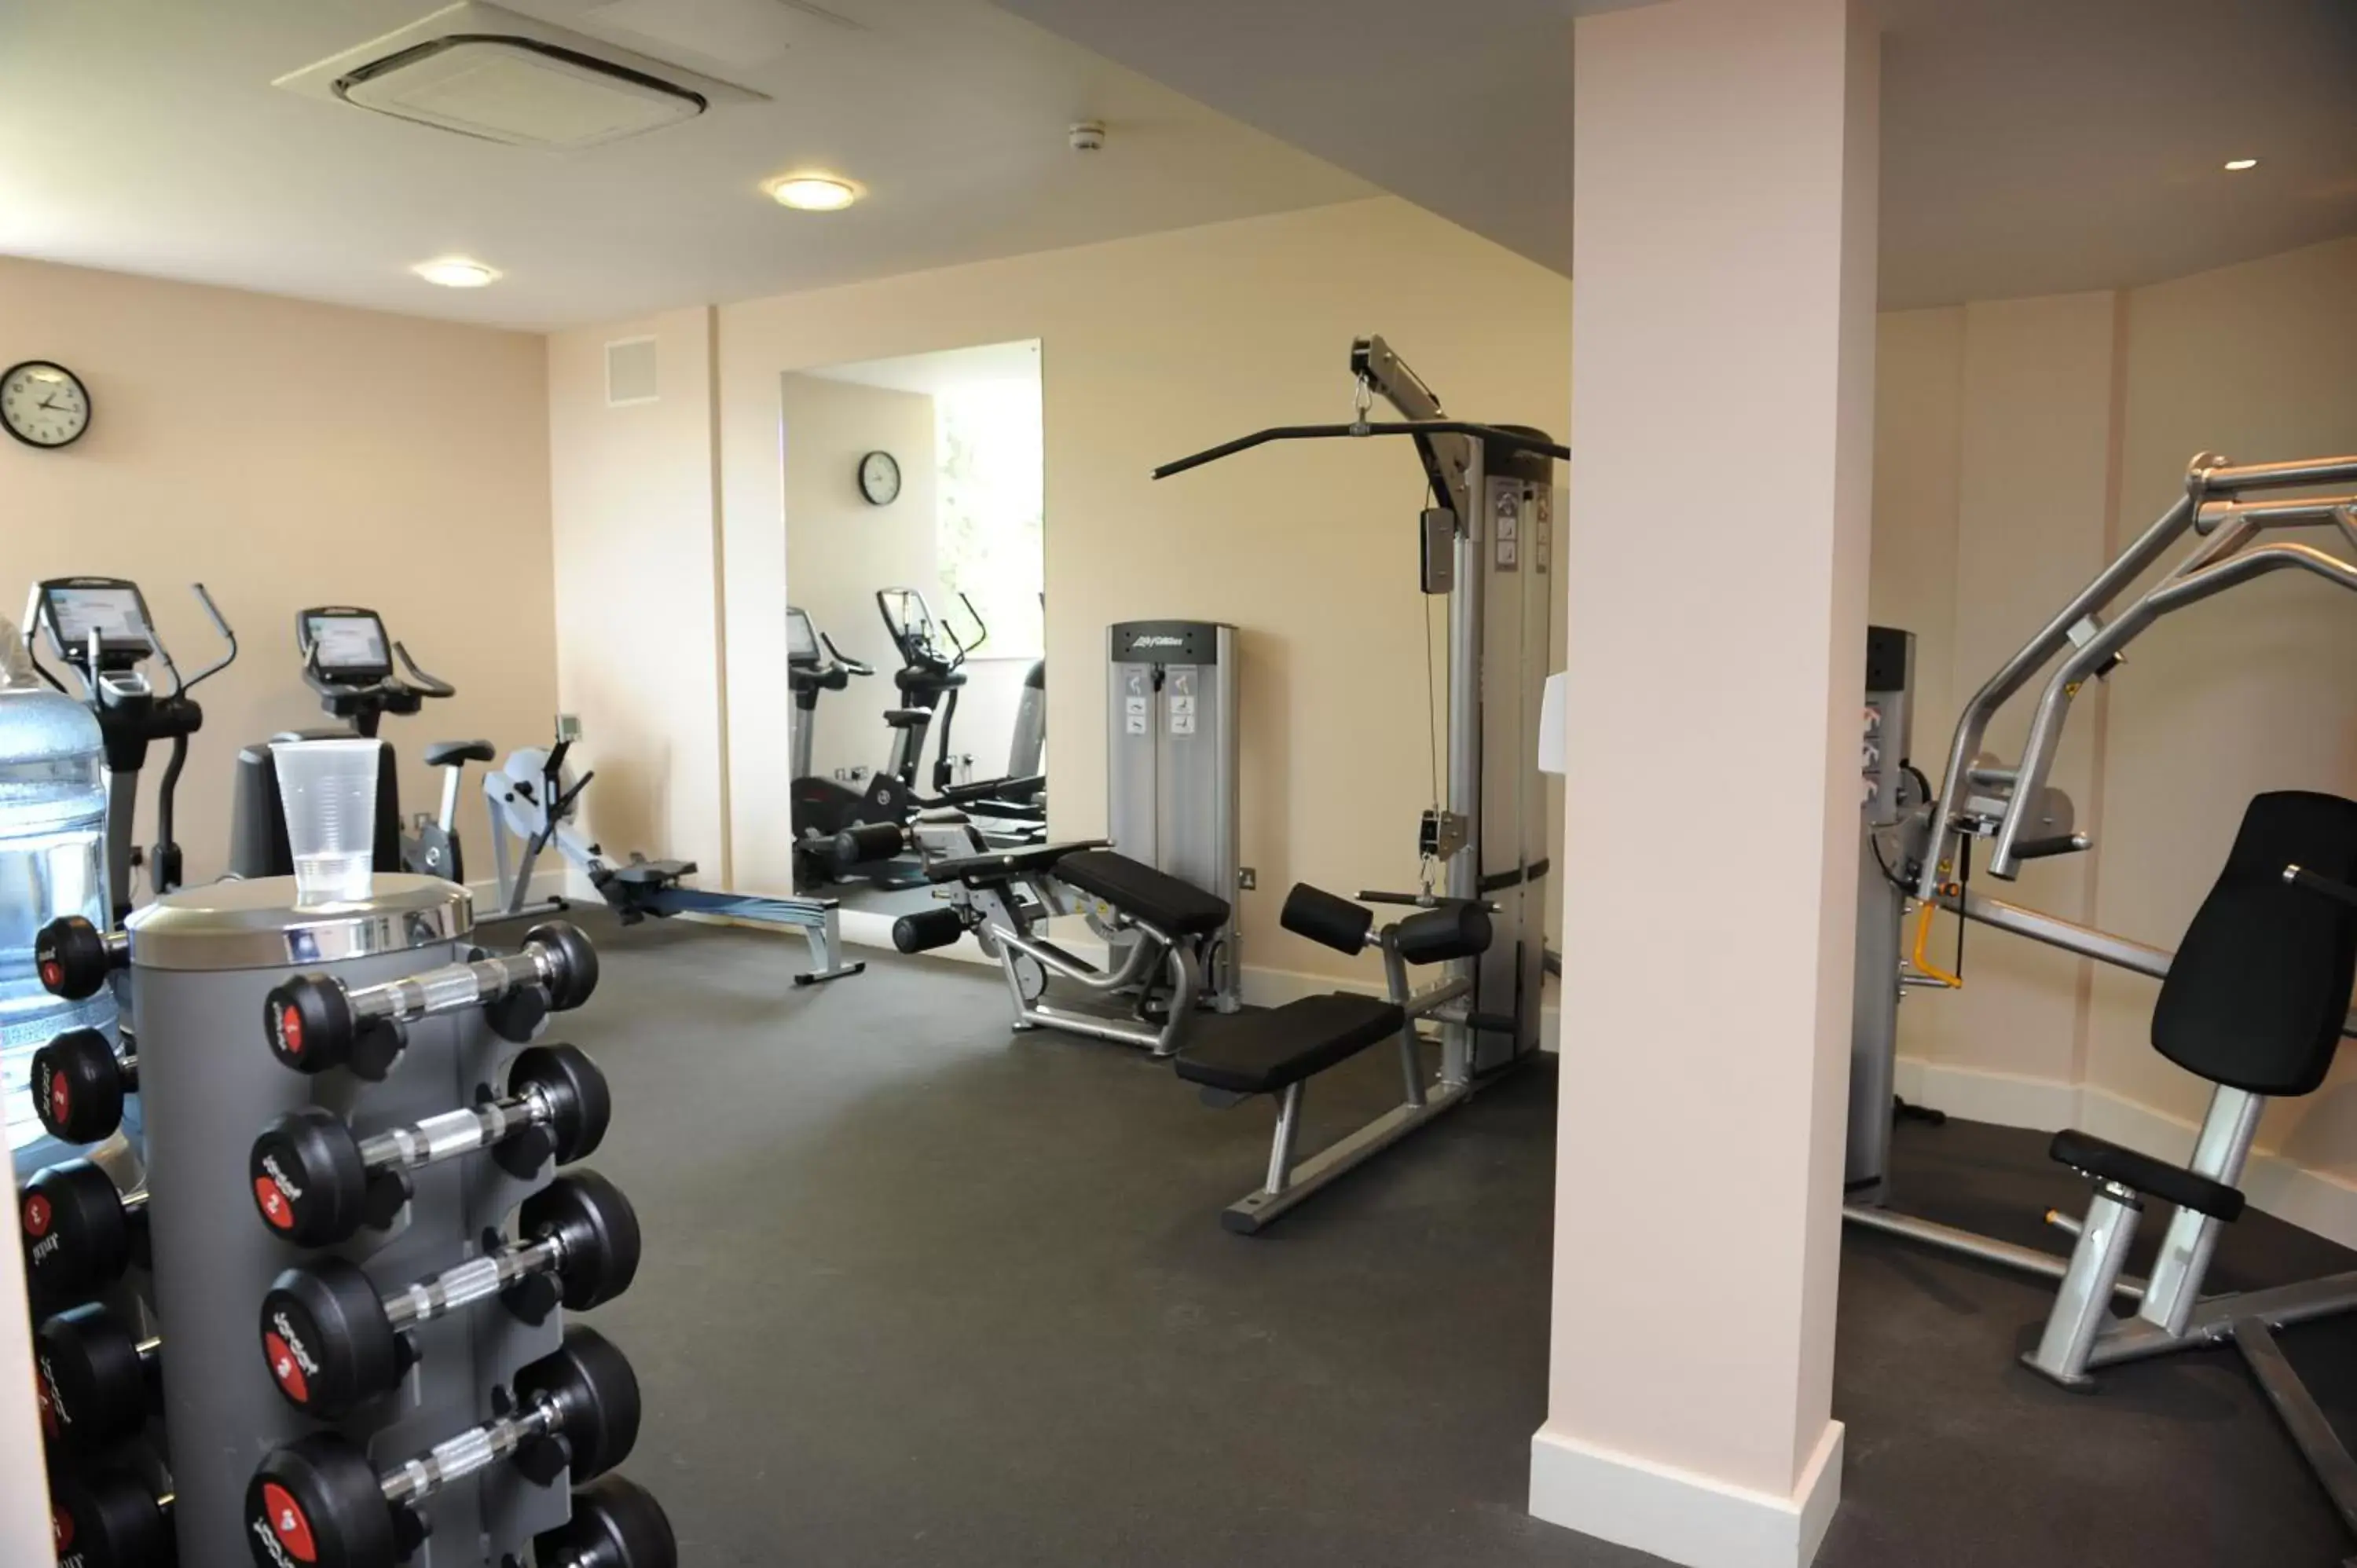 Fitness centre/facilities, Fitness Center/Facilities in Ockenden Manor Hotel & Spa